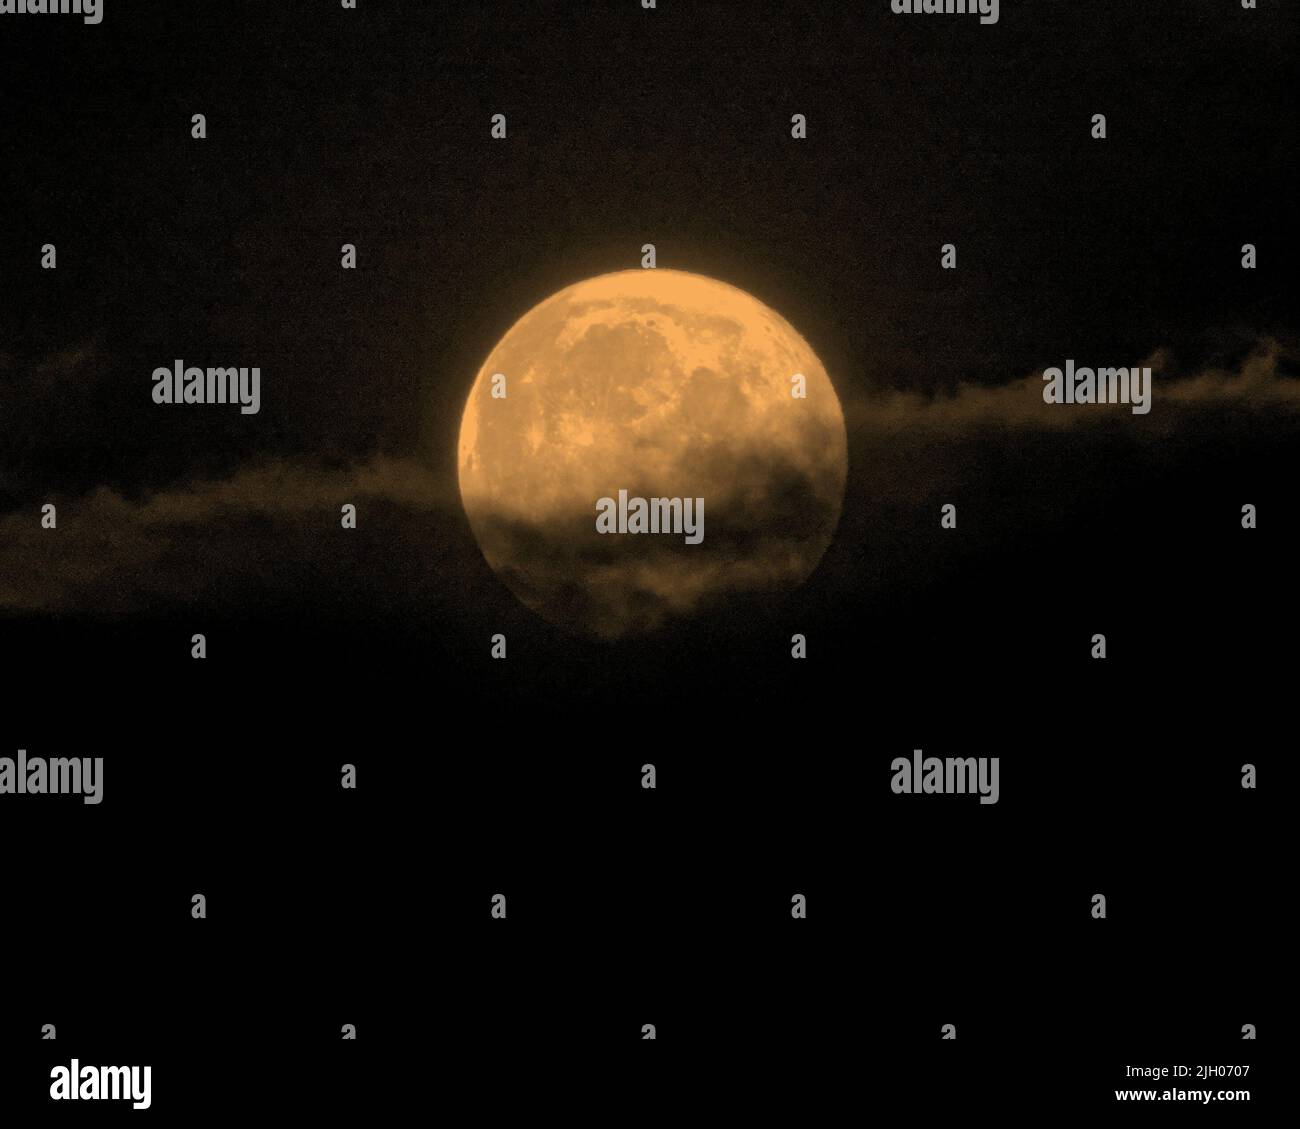 Glasgow, Écosse, Royaume-Uni 13 juillet 2022. Météo au Royaume-Uni : Super Buck Moon lutte à travers un ciel nuageux au-dessus des lumières du sud de la ville après une journée changeante qui a plu. Crédit Gerard Ferry/Alay Live News Banque D'Images